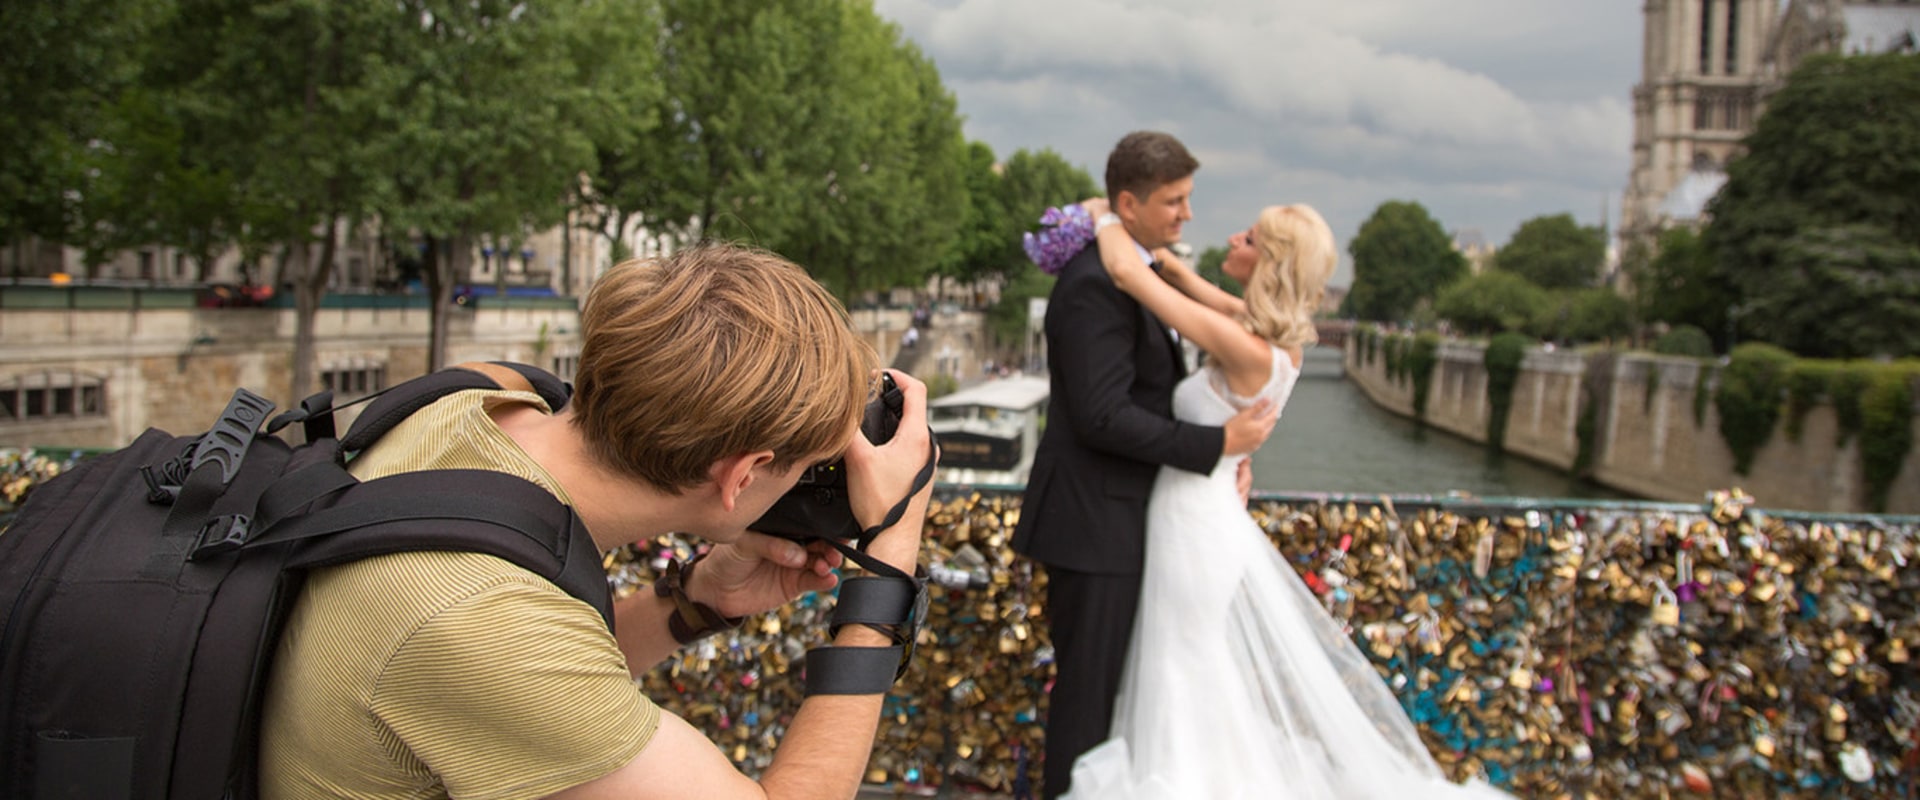 Tomar la decisión final: cómo elegir el fotógrafo de bodas adecuado